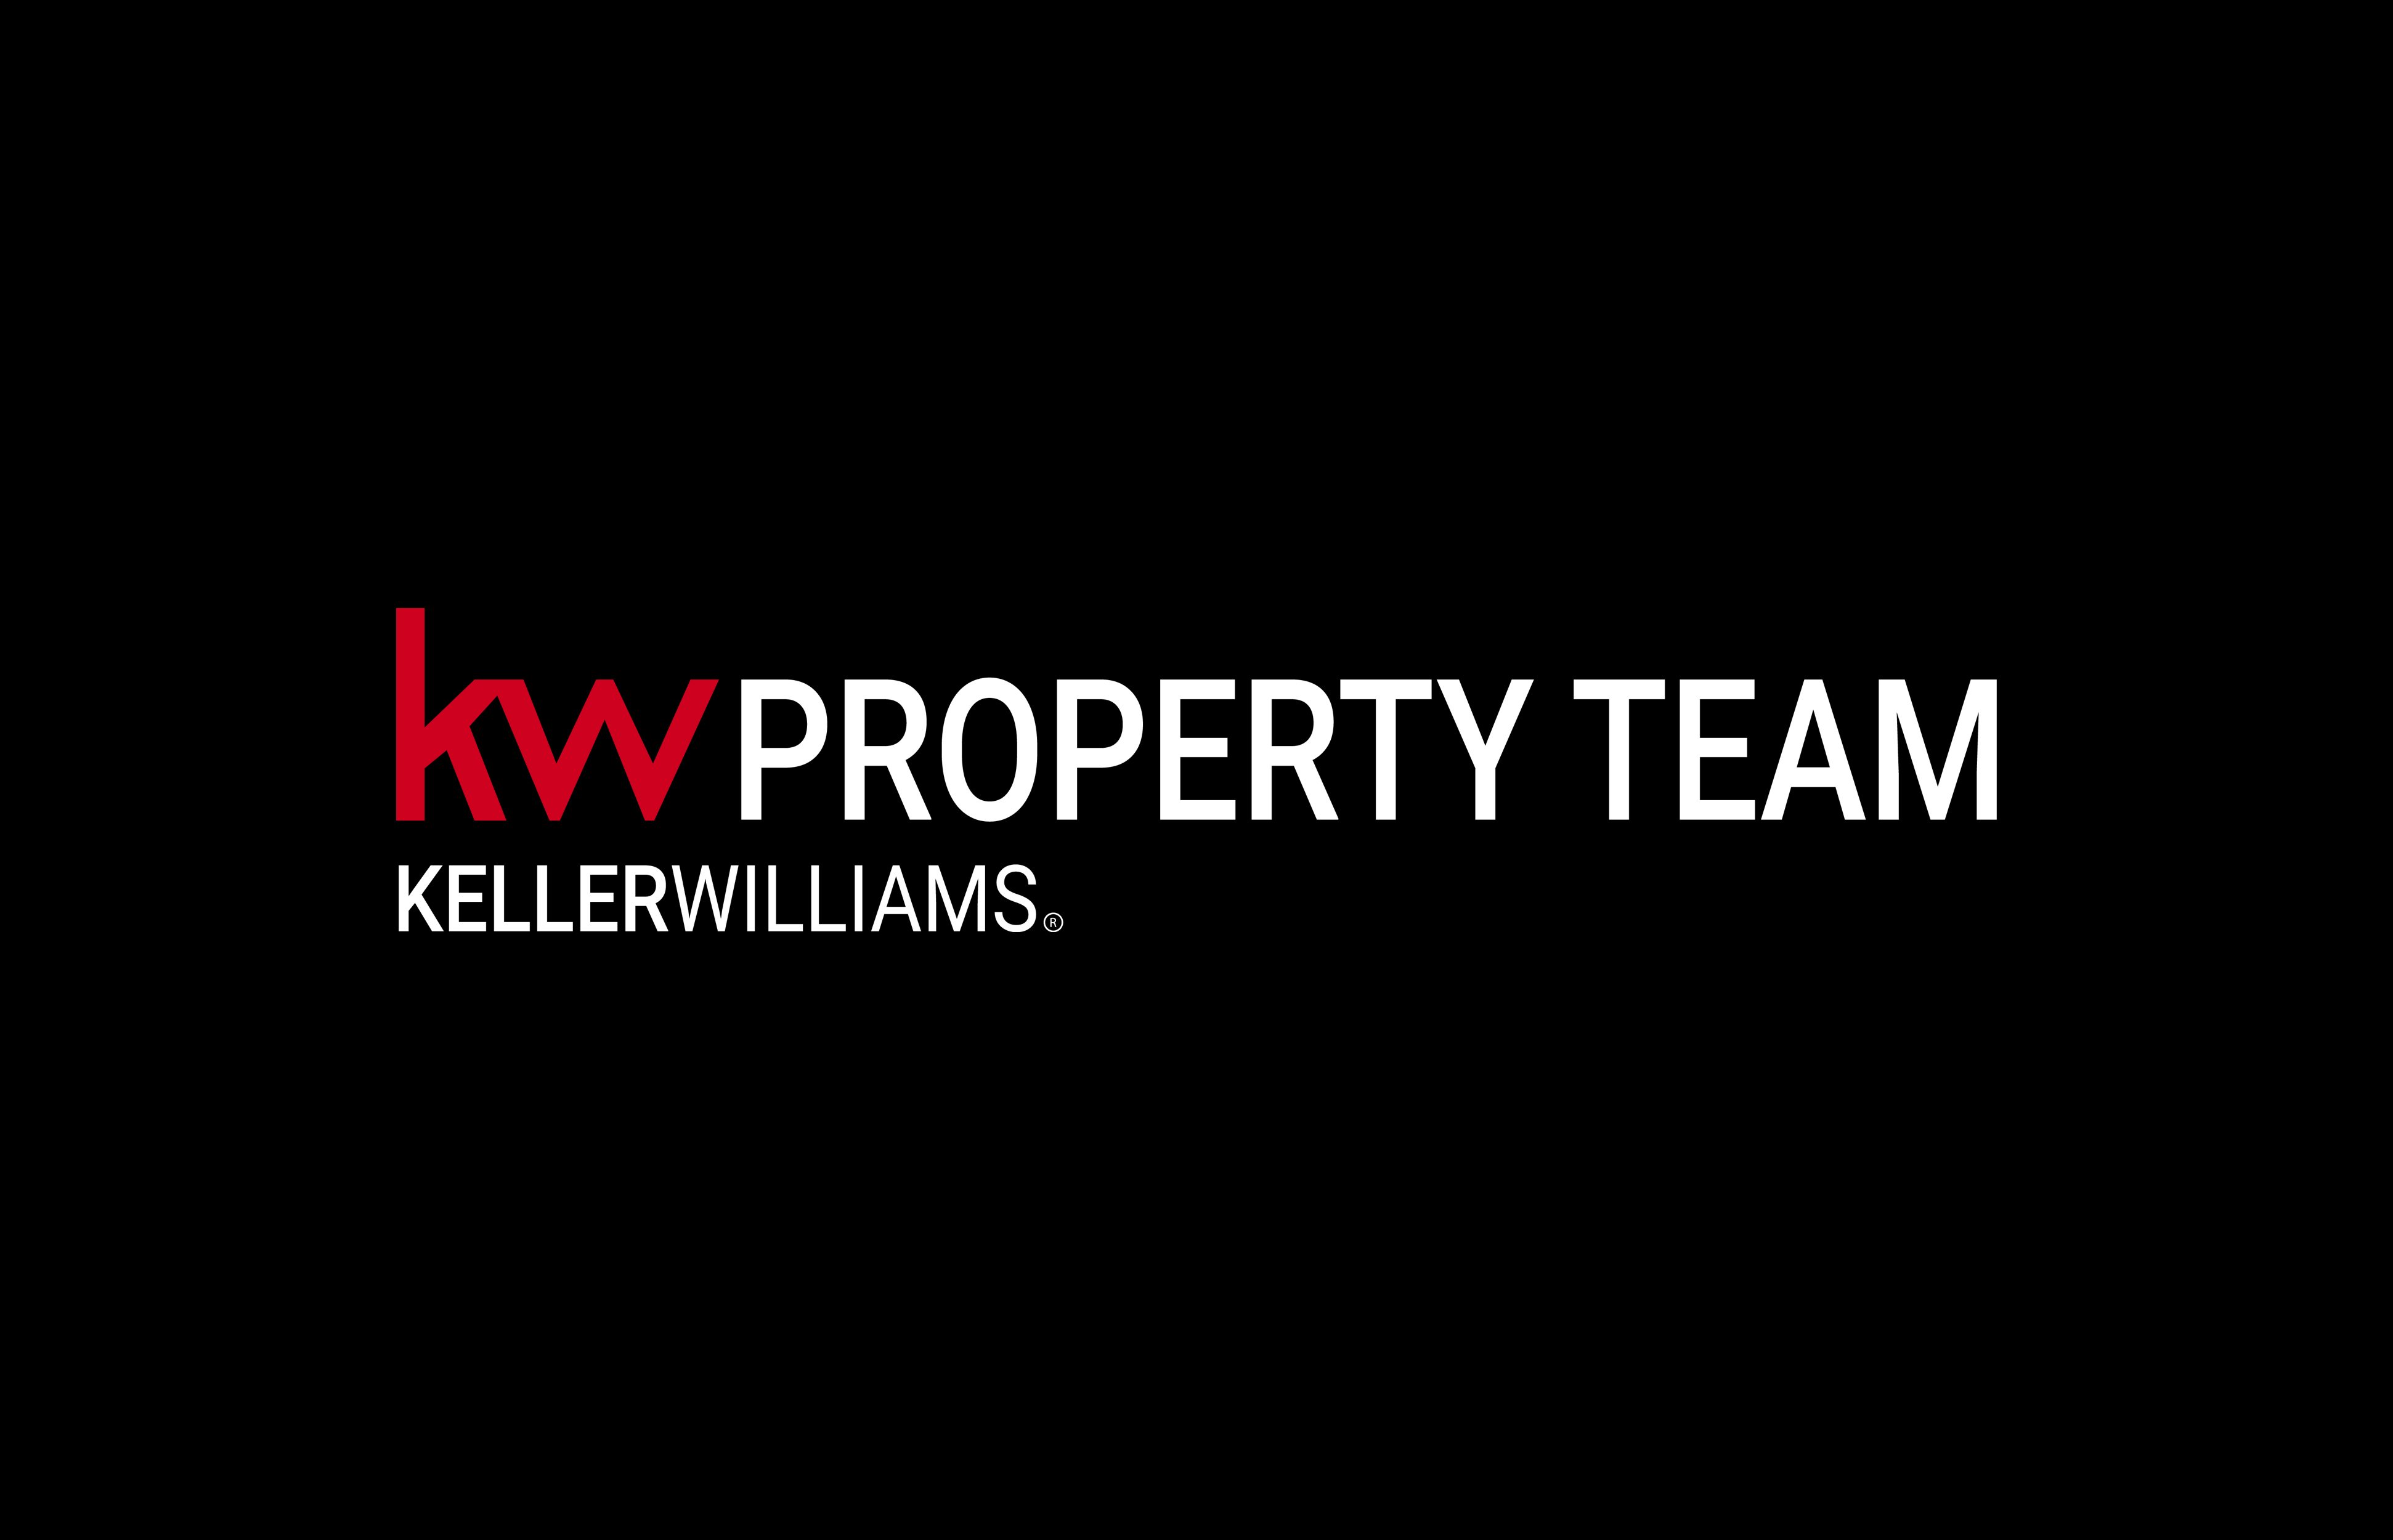 KW Property Team, Keller Williams Realty